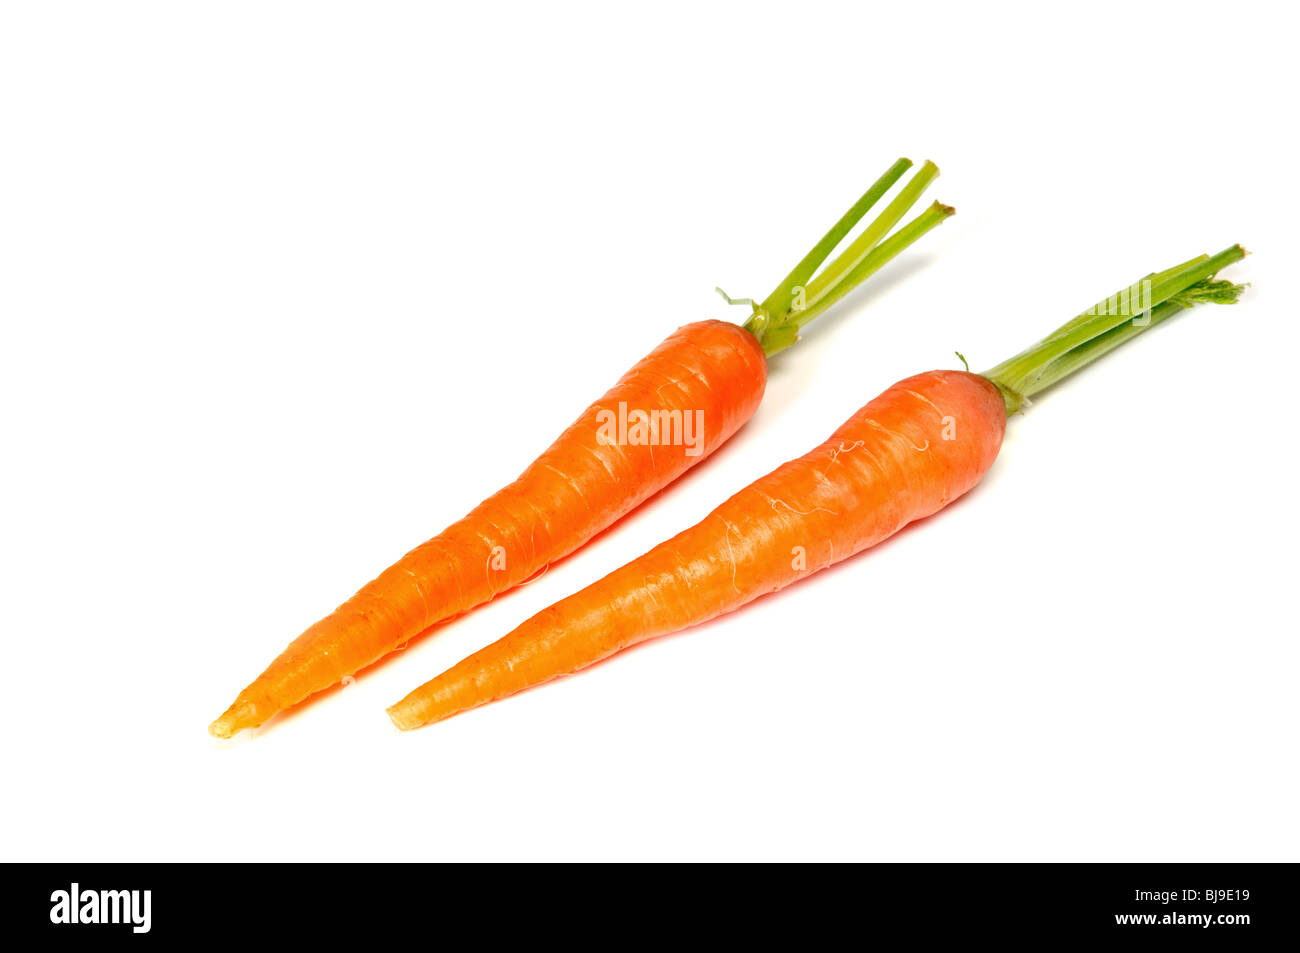 Paire de carotte frais isolated on white Banque D'Images